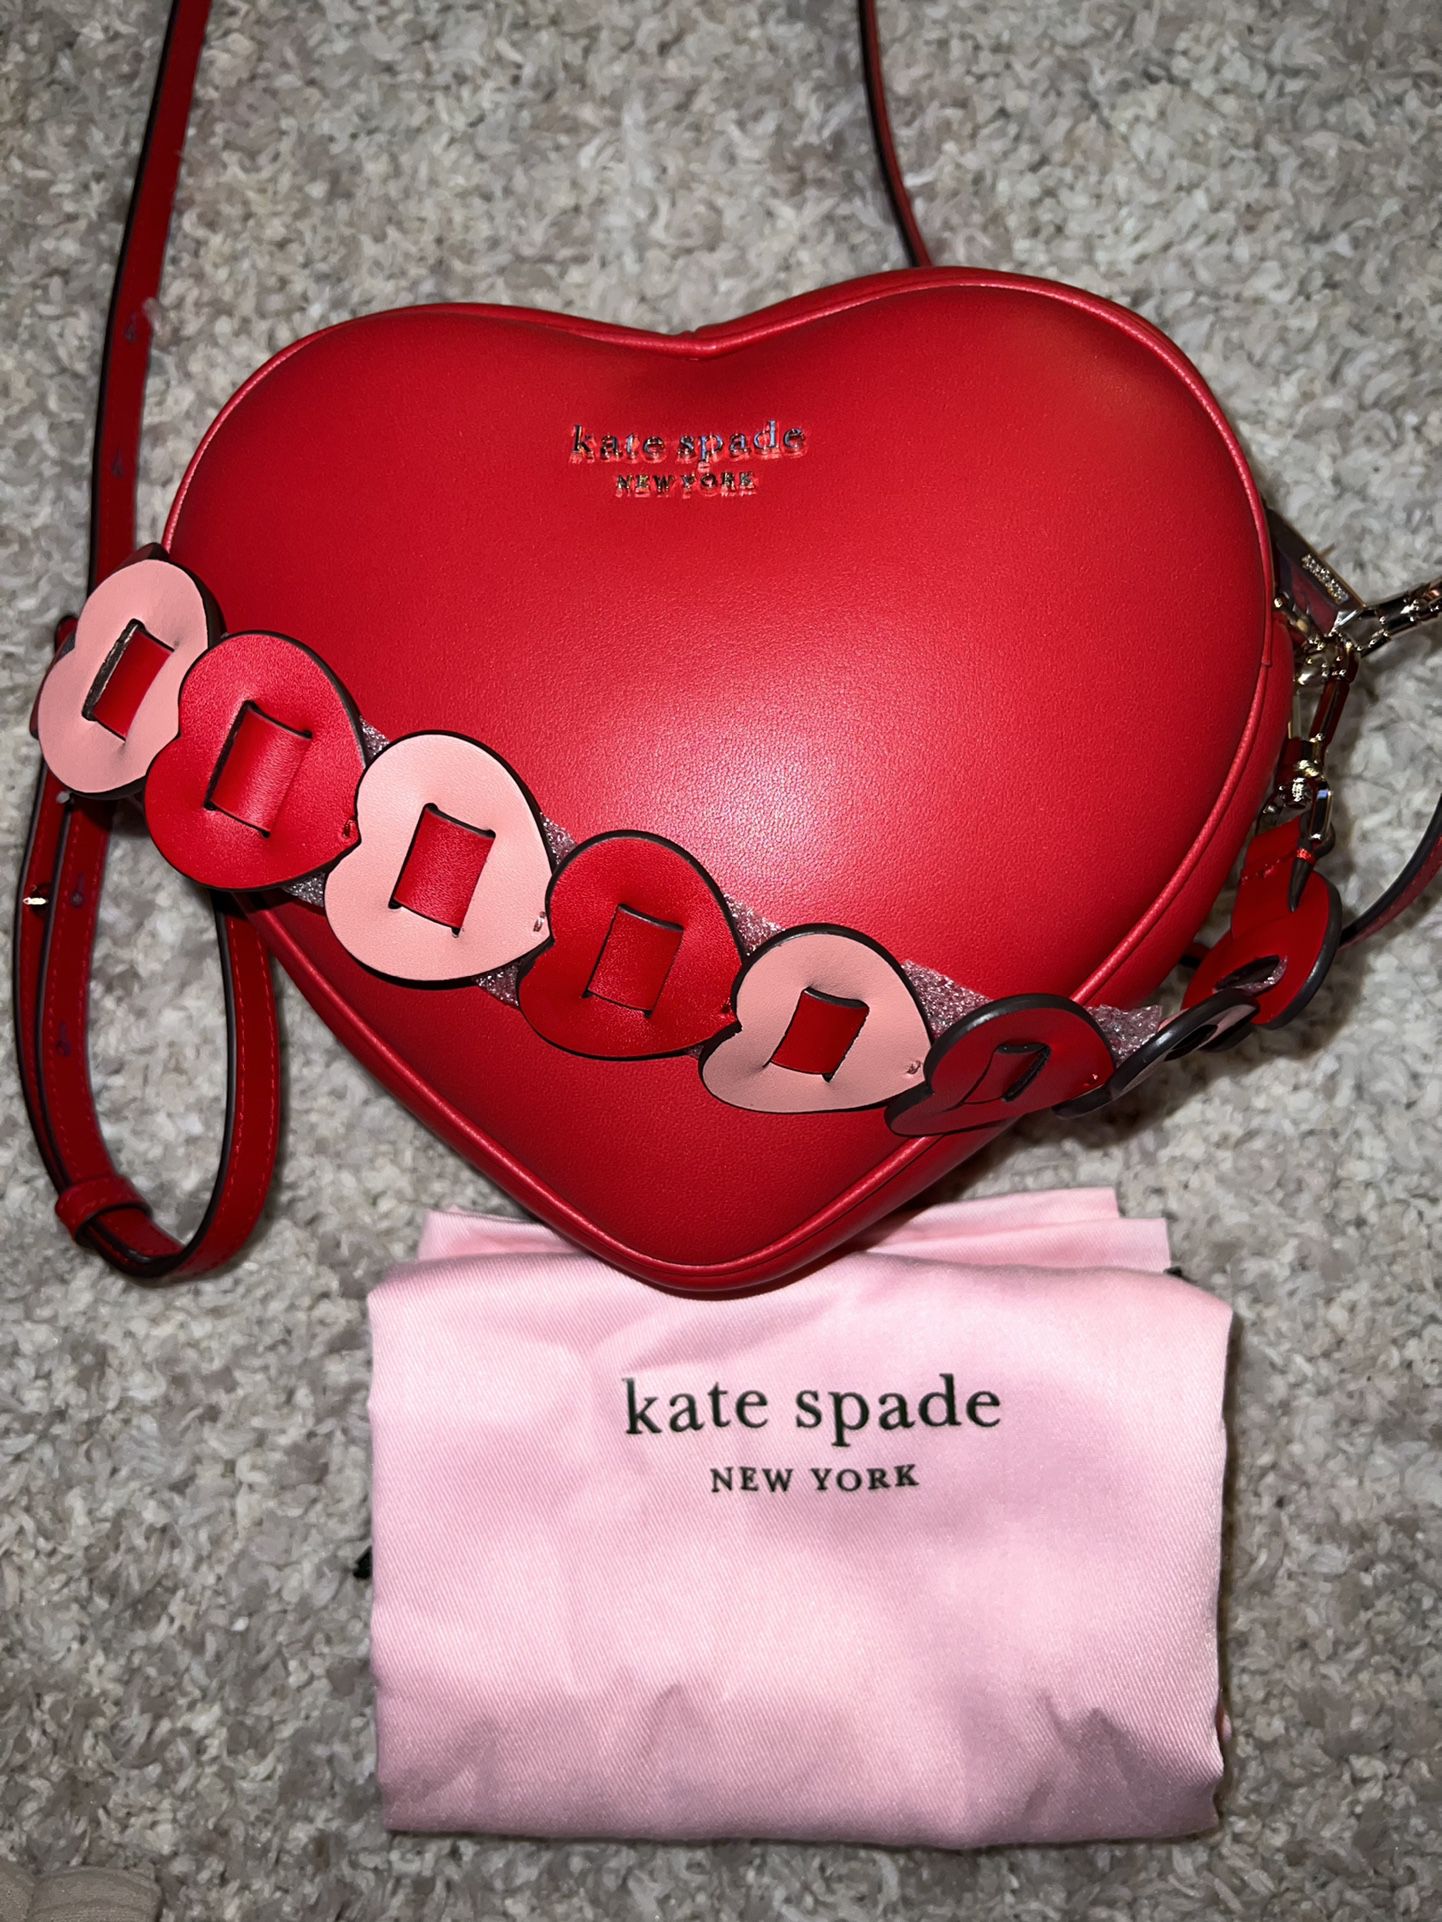 Kate Spade Fur Bag 3D model